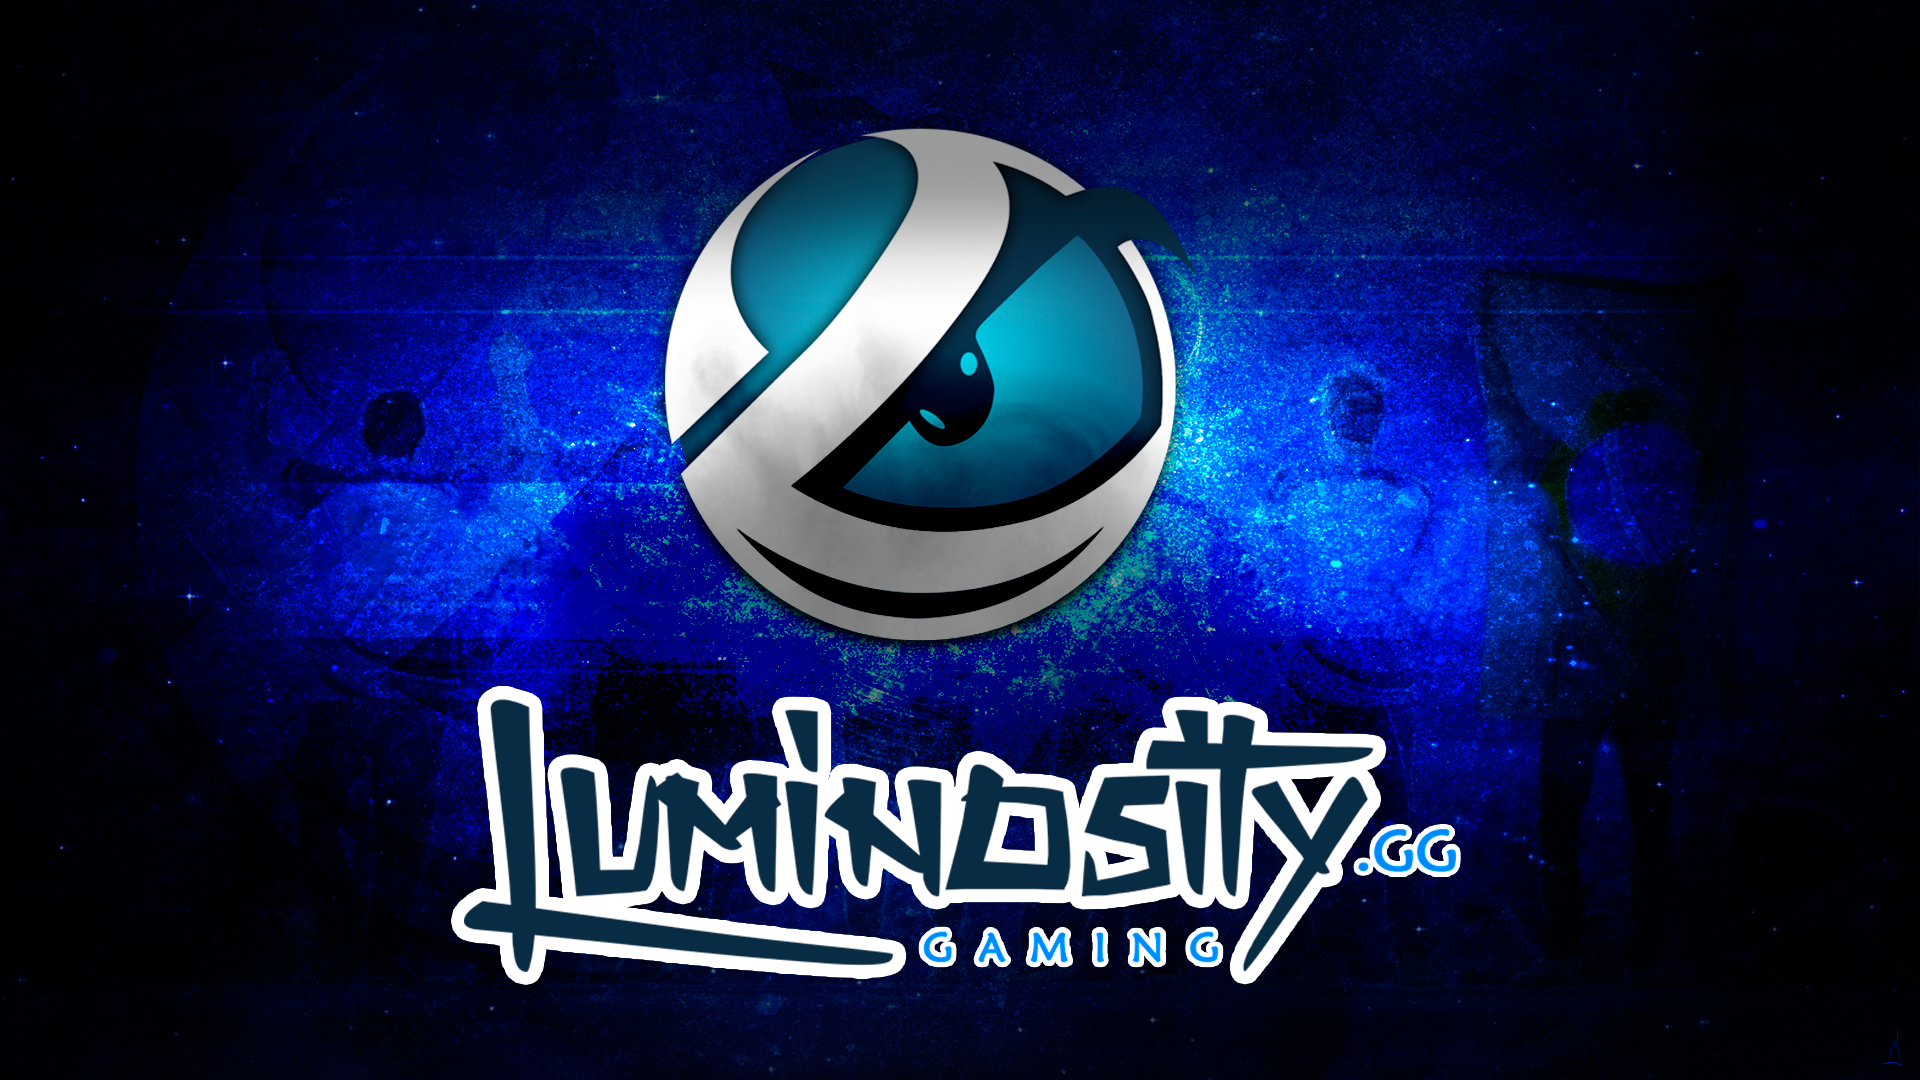 Luminosity Gaming Background